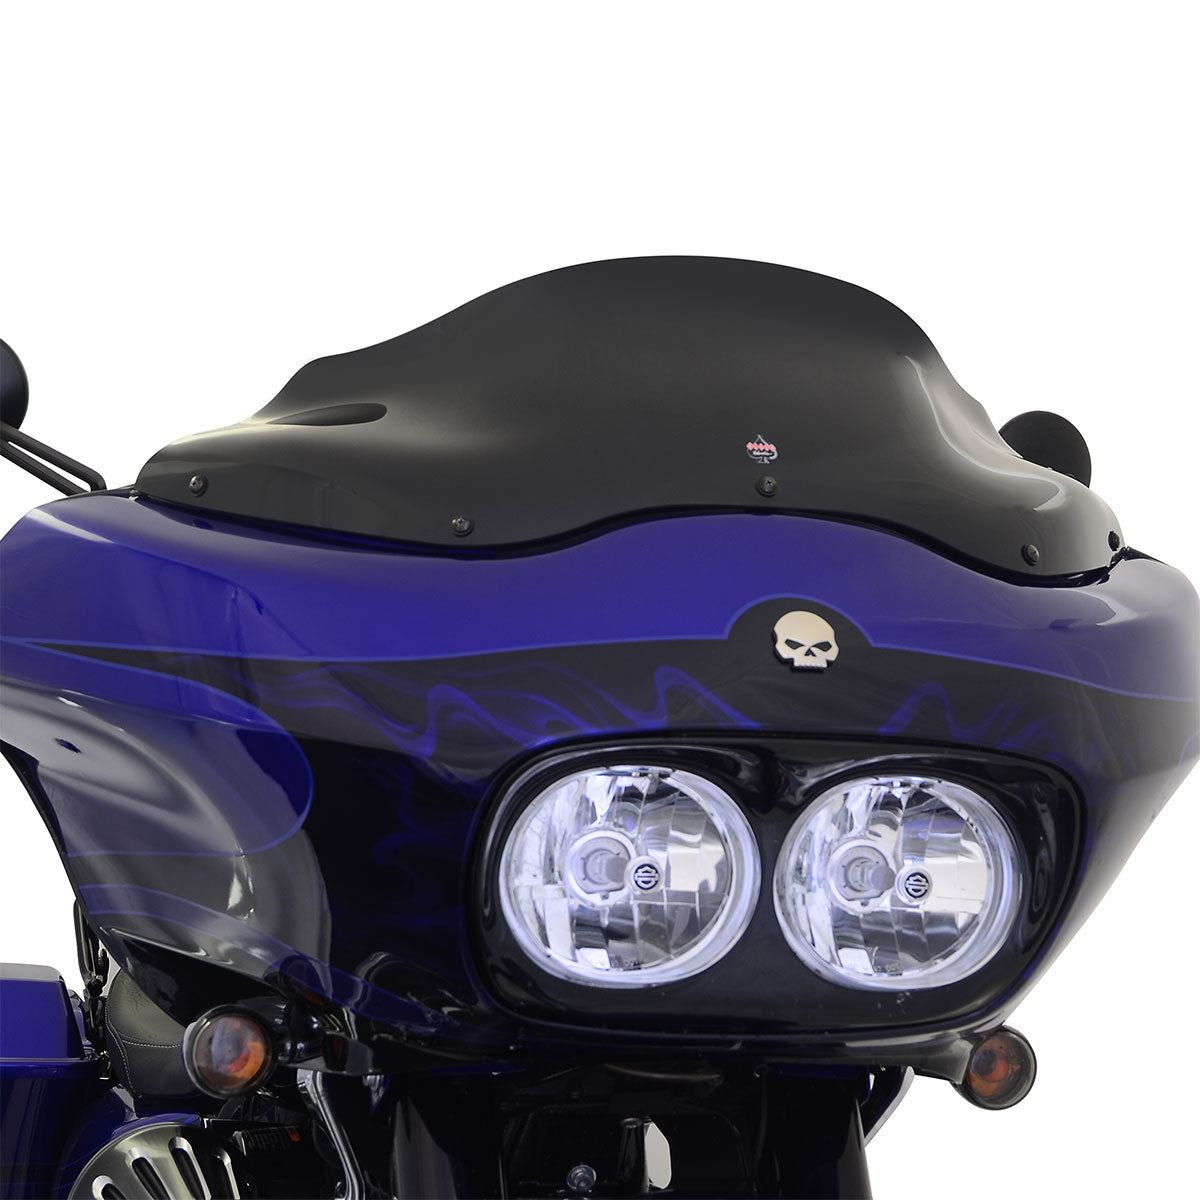 8" Sport Solid Black Flare™ Windshield for Harley-Davidson 1998-2013 Road Glide Motorcycle Models(8" Sport - Solid Black)